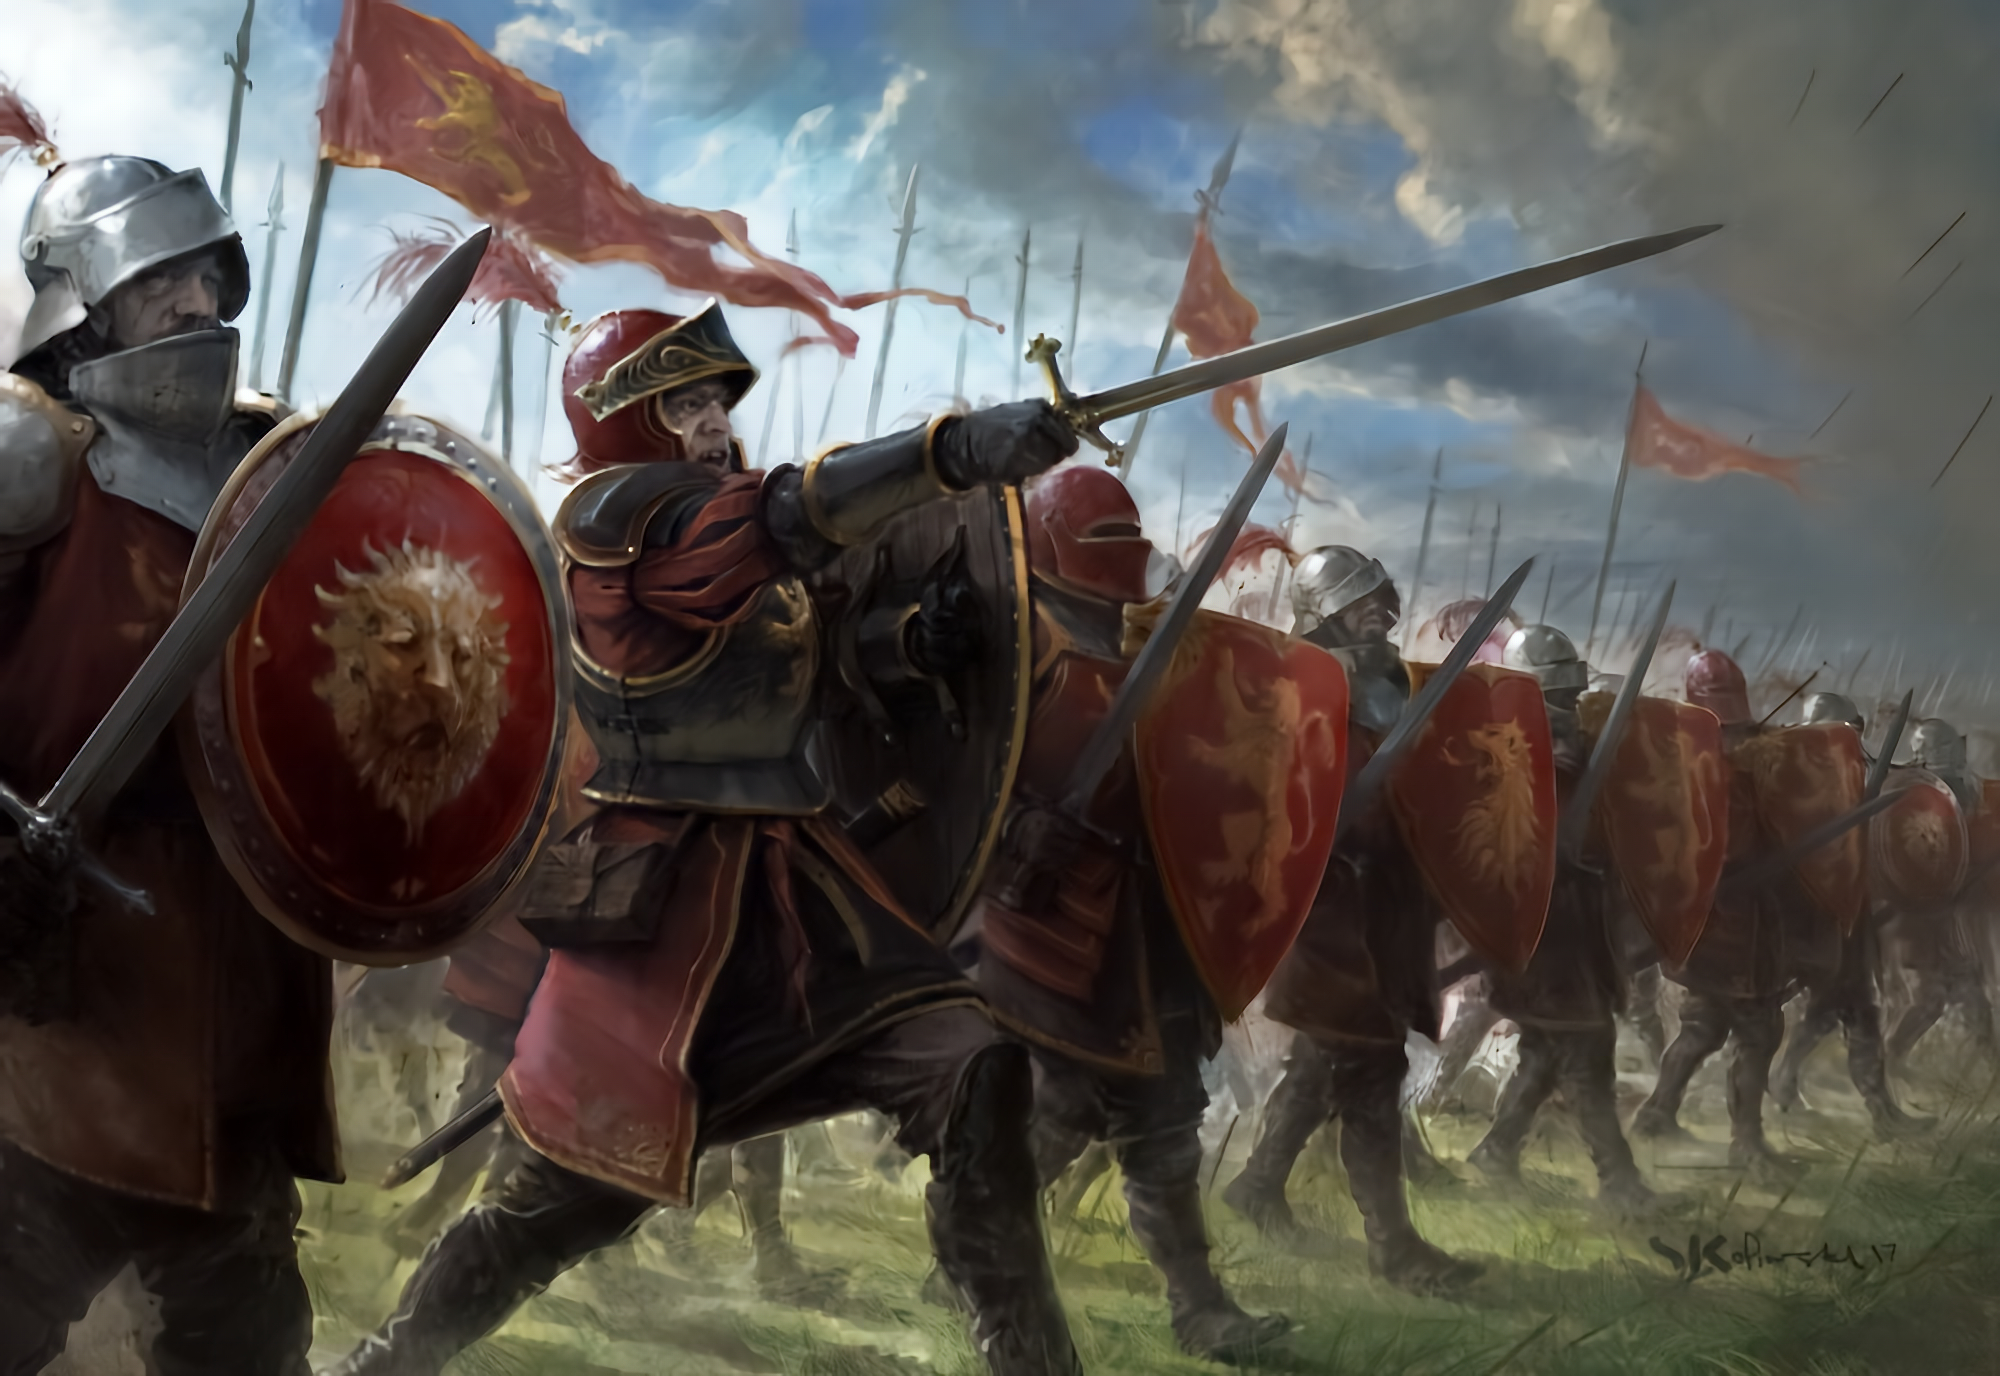 General 2000x1376 fantasy art knight warrior army digital art